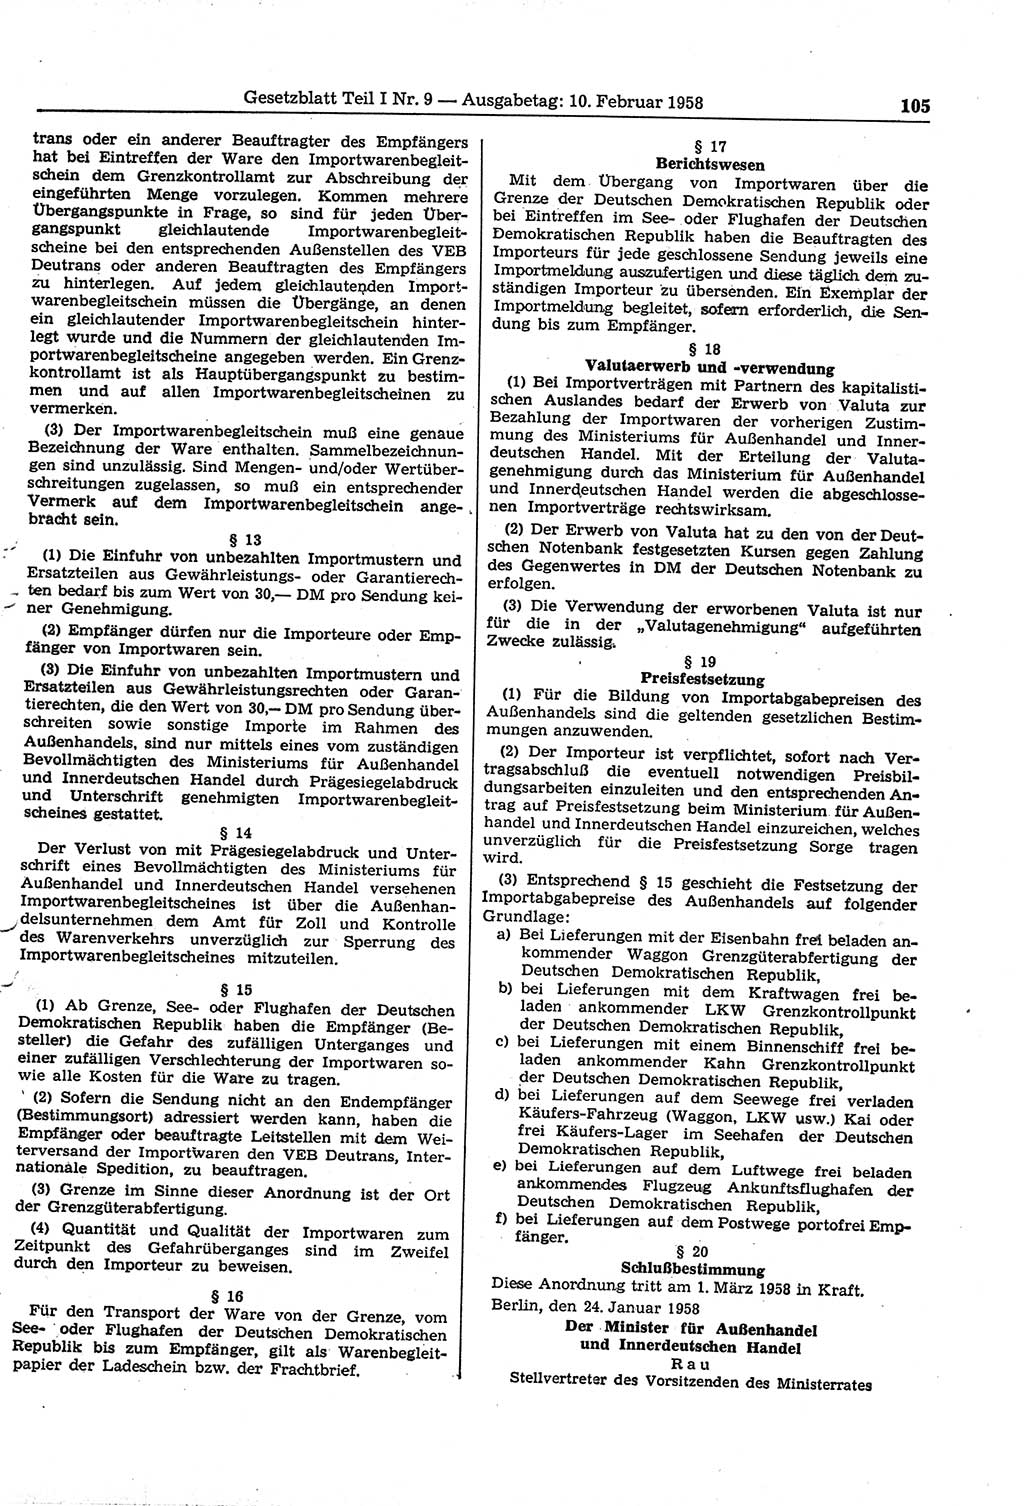 Gesetzblatt (GBl.) der Deutschen Demokratischen Republik (DDR) Teil Ⅰ 1958, Seite 105 (GBl. DDR Ⅰ 1958, S. 105)